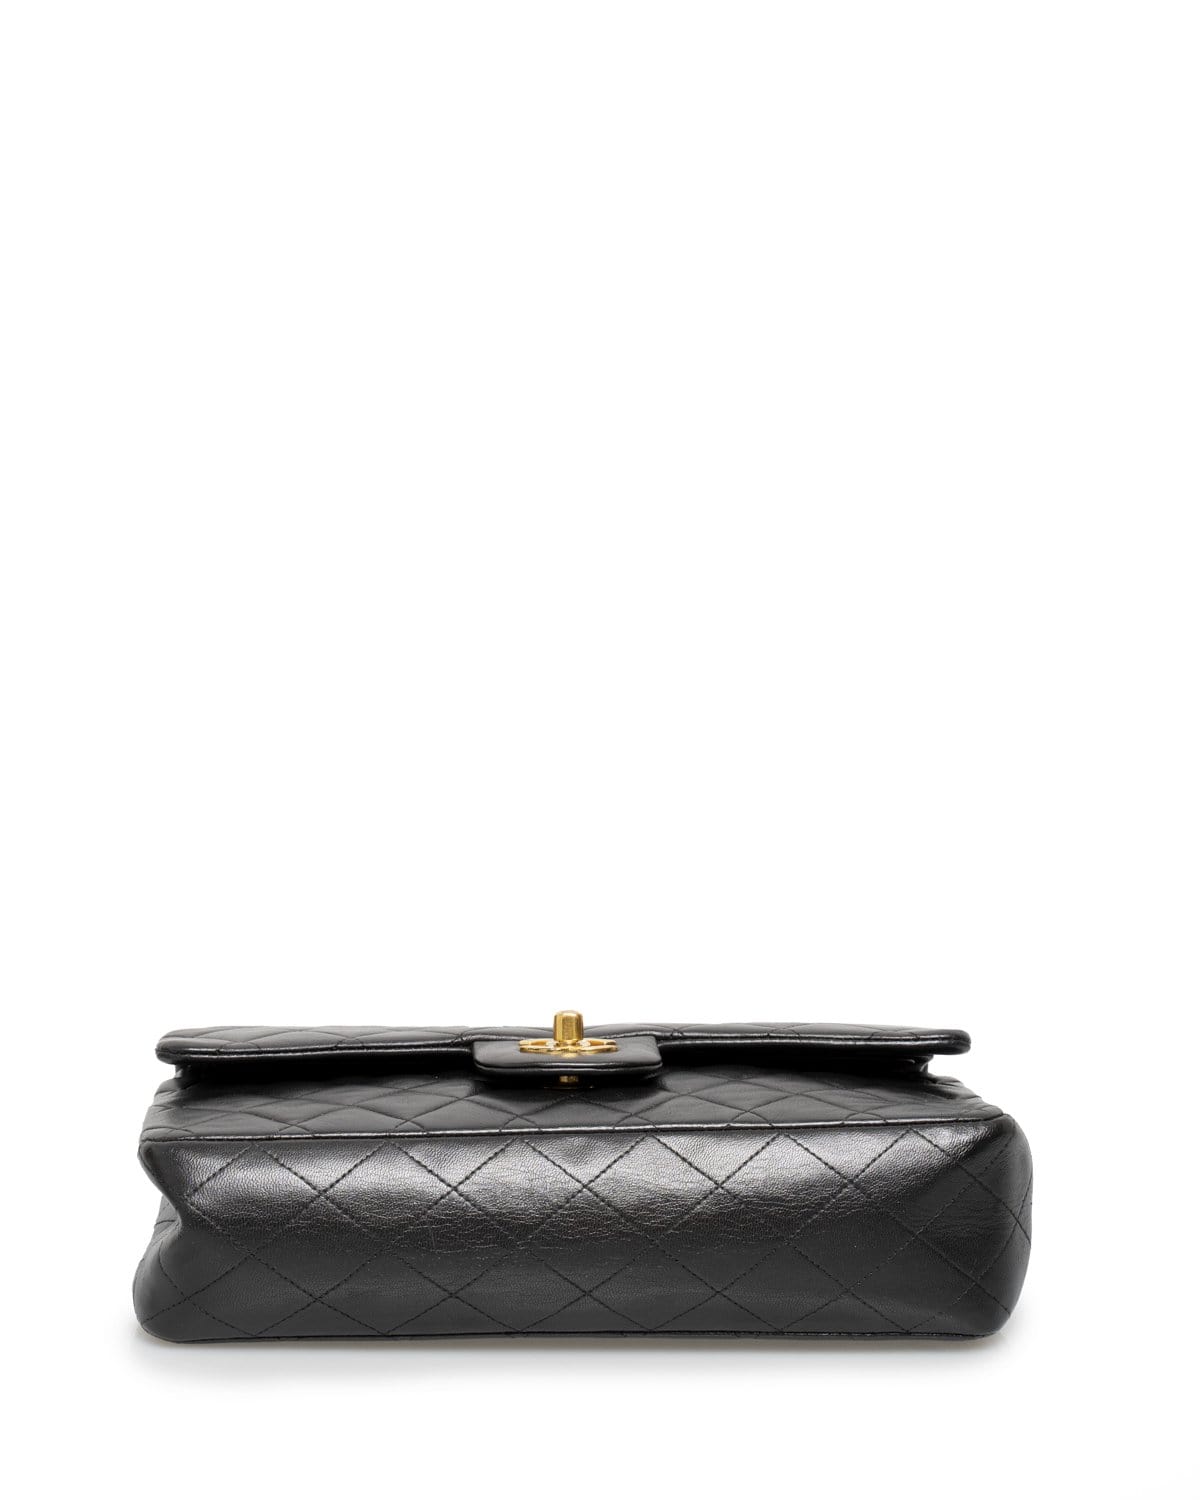 Chanel Chanel 10inch Vintage Flap Bag - ADL1531